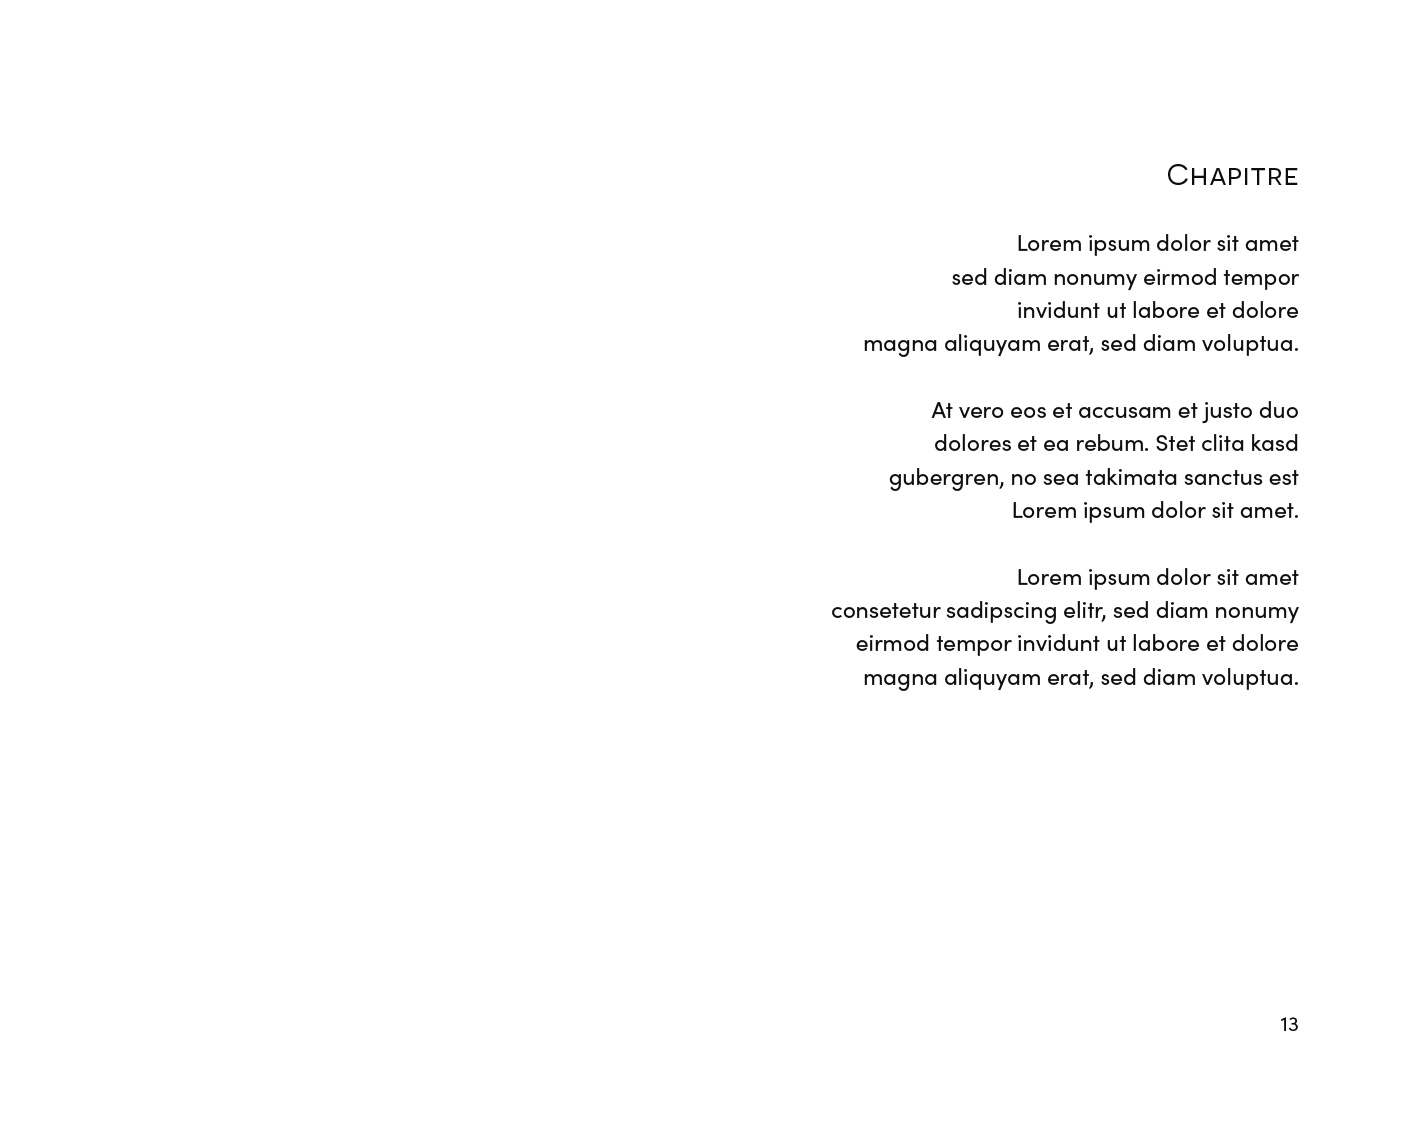 Exemple d'une mise en page de poésie contemporaine version équilibrée